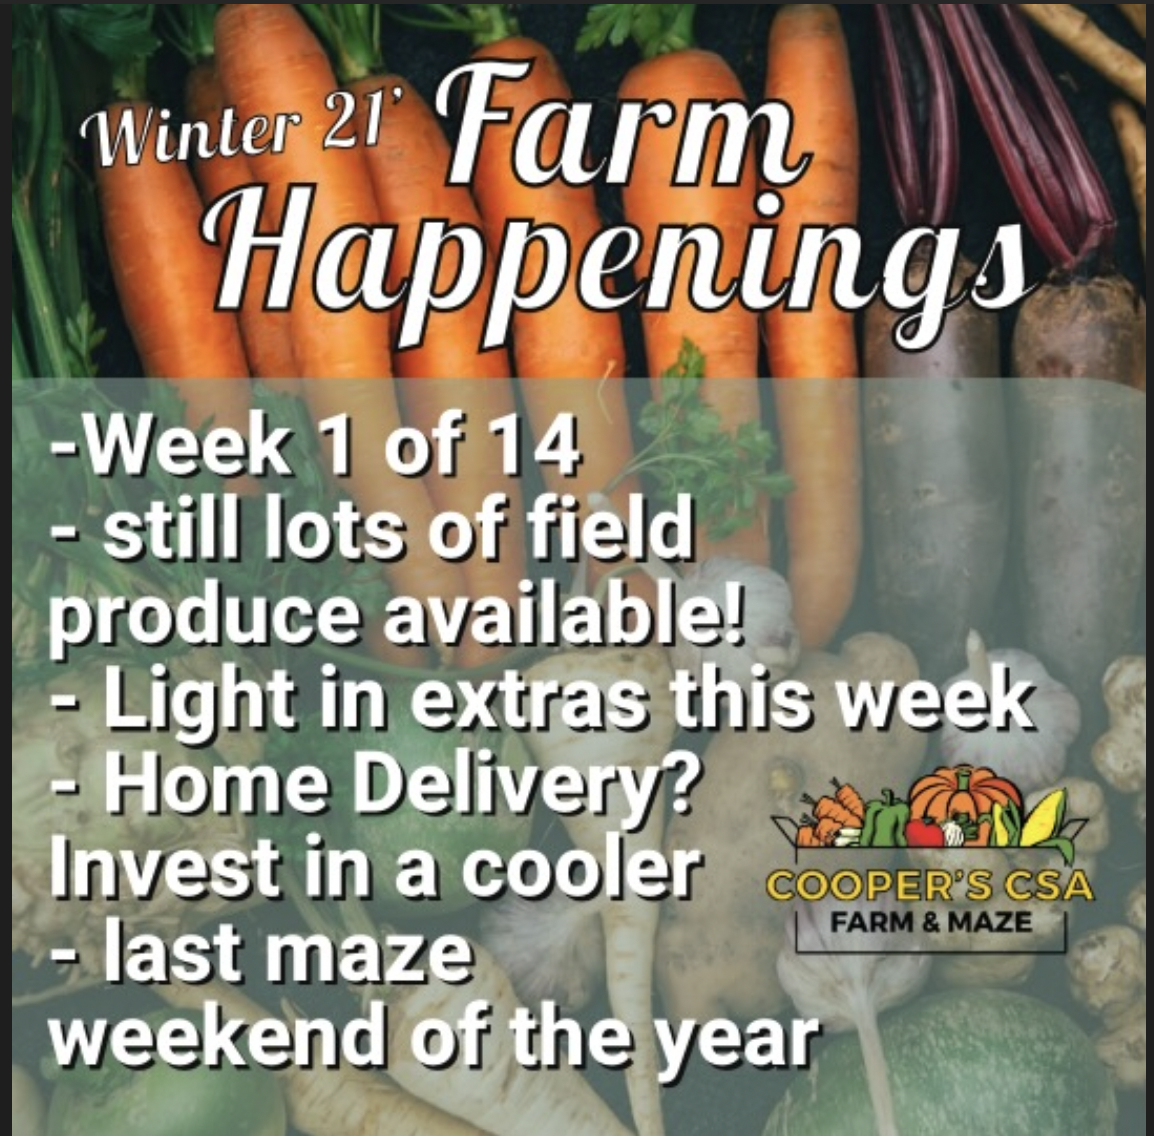 "The Farm Box"-Coopers CSA Farm Farm Happenings Nov.1st-6th, 2021 Week 1